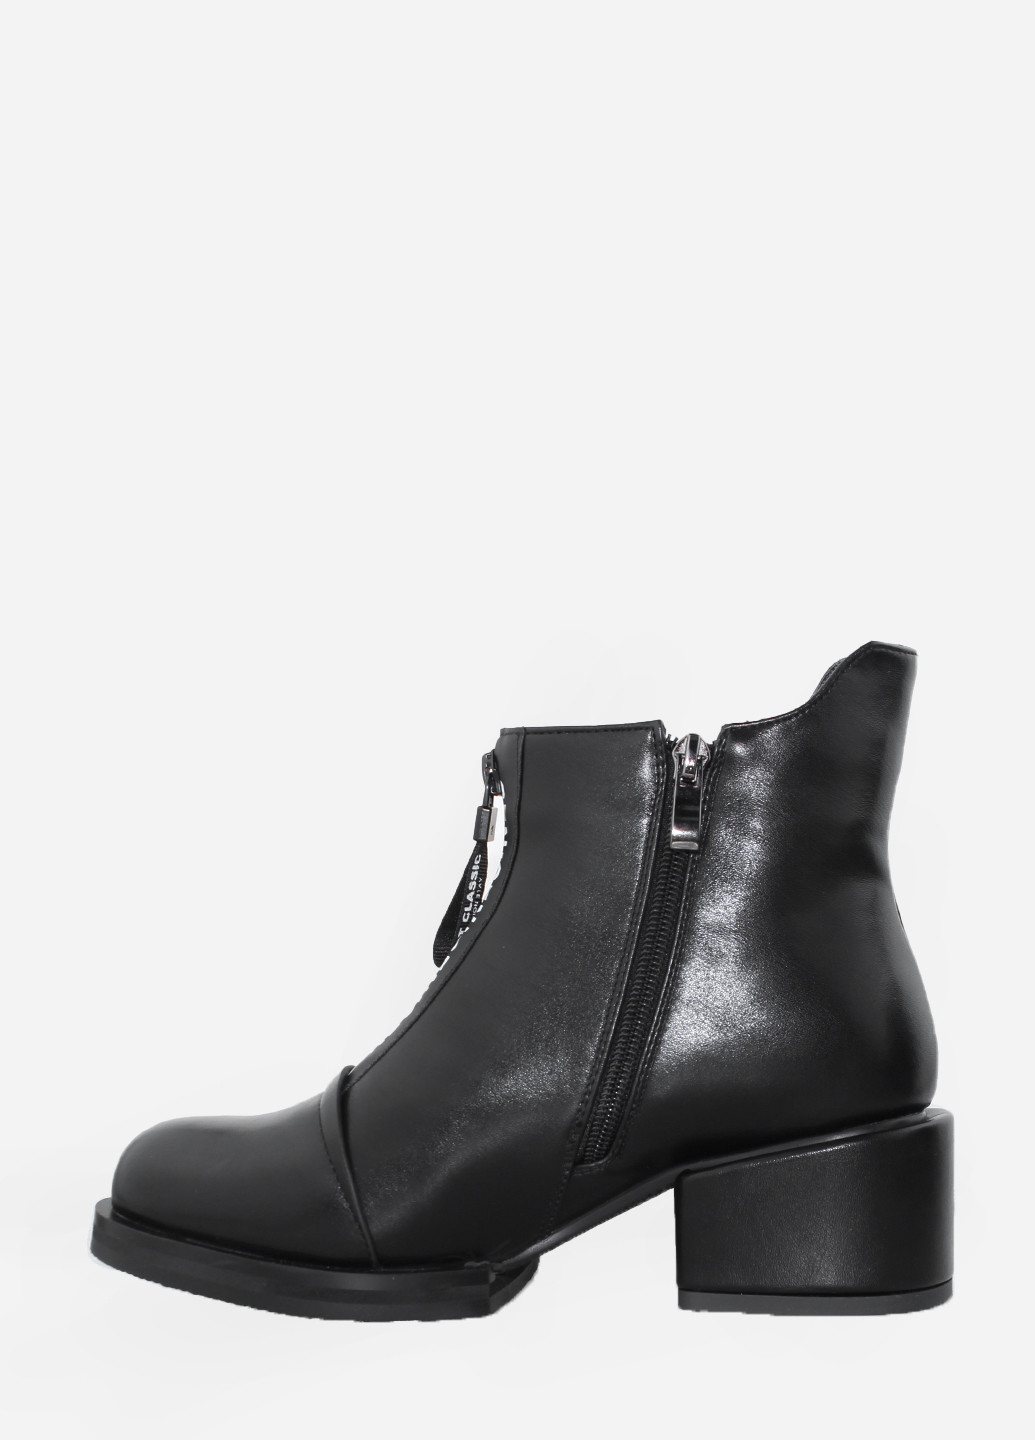 Осенние ботинки r3867-k1716 черный Rusi Moni из искусственной кожи